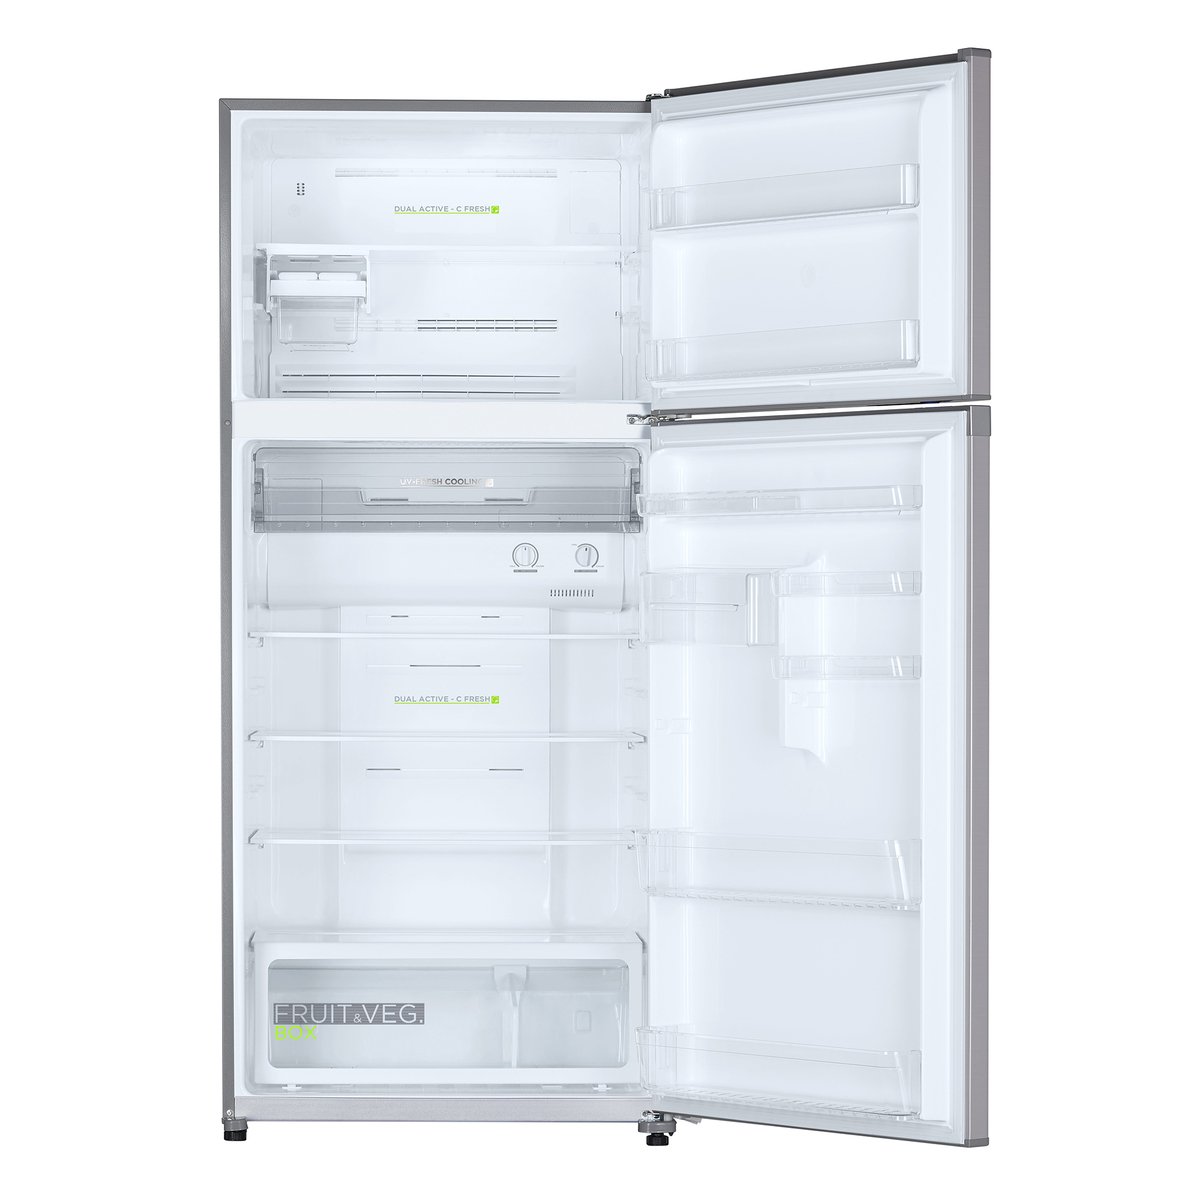 Midea Double Door Refrigerator HD790FWEN 790Ltr